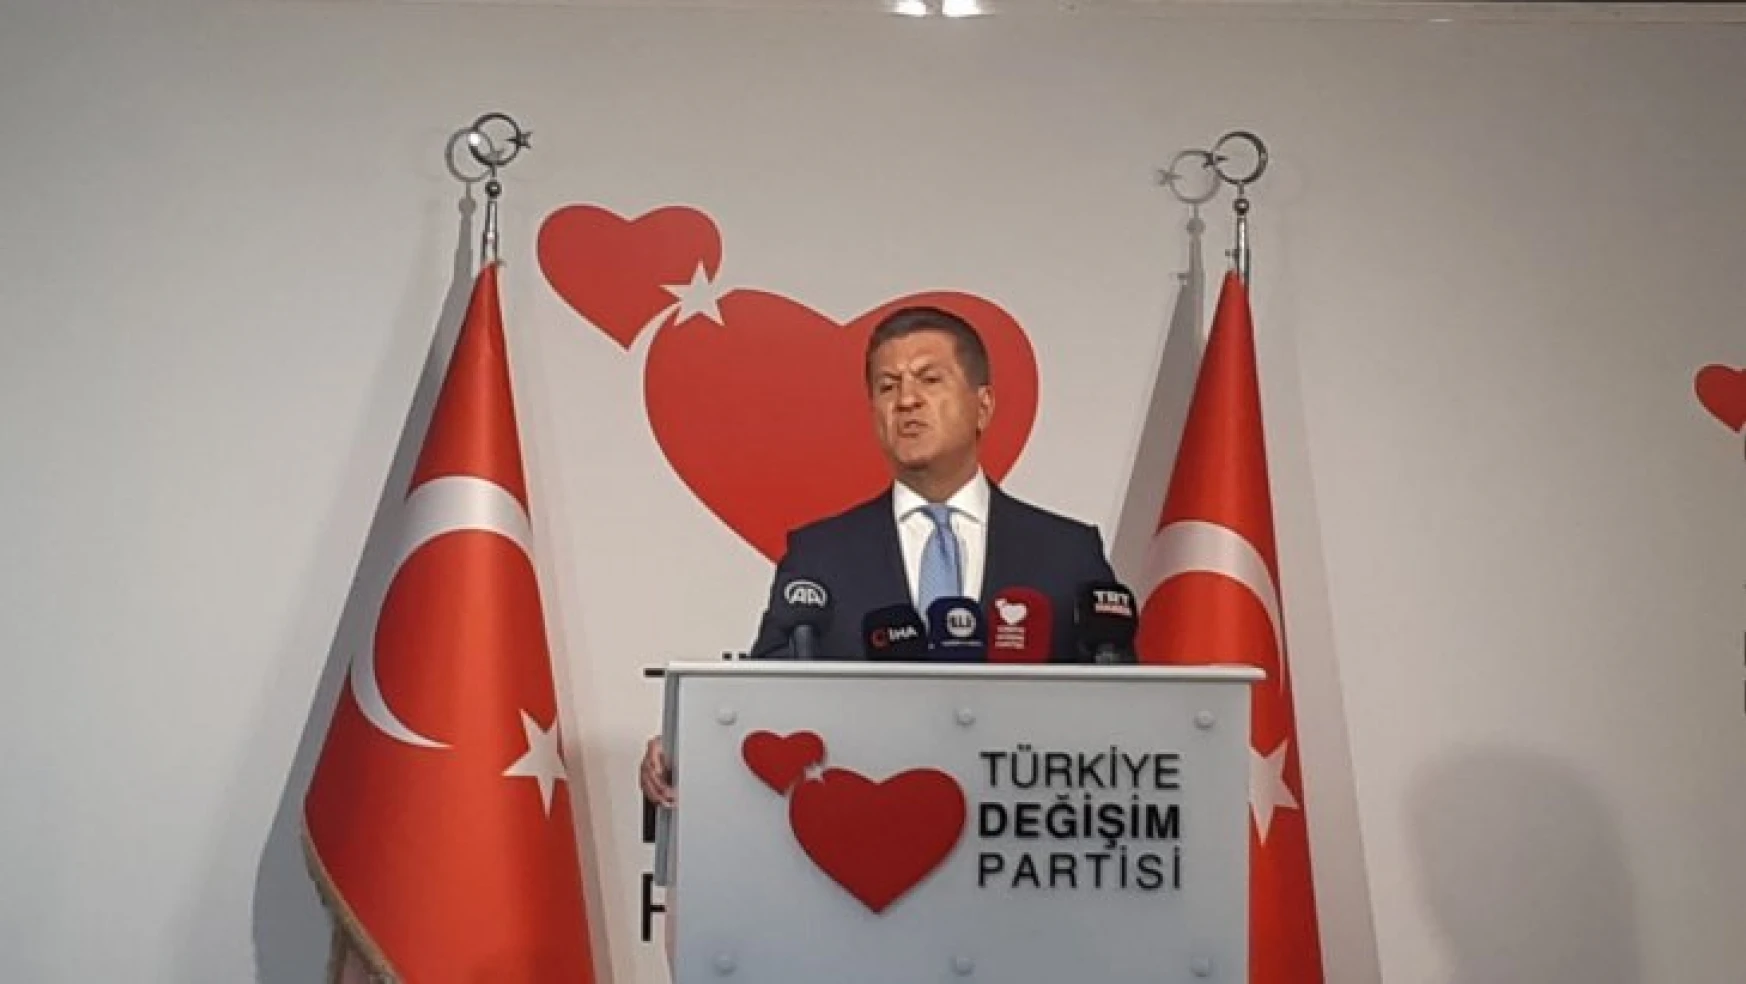 TDP Genel Başkanı Sarıgül: '15 Temmuz'un siyasi ayağı, 28 Şubat'ın medya ayağıdır'